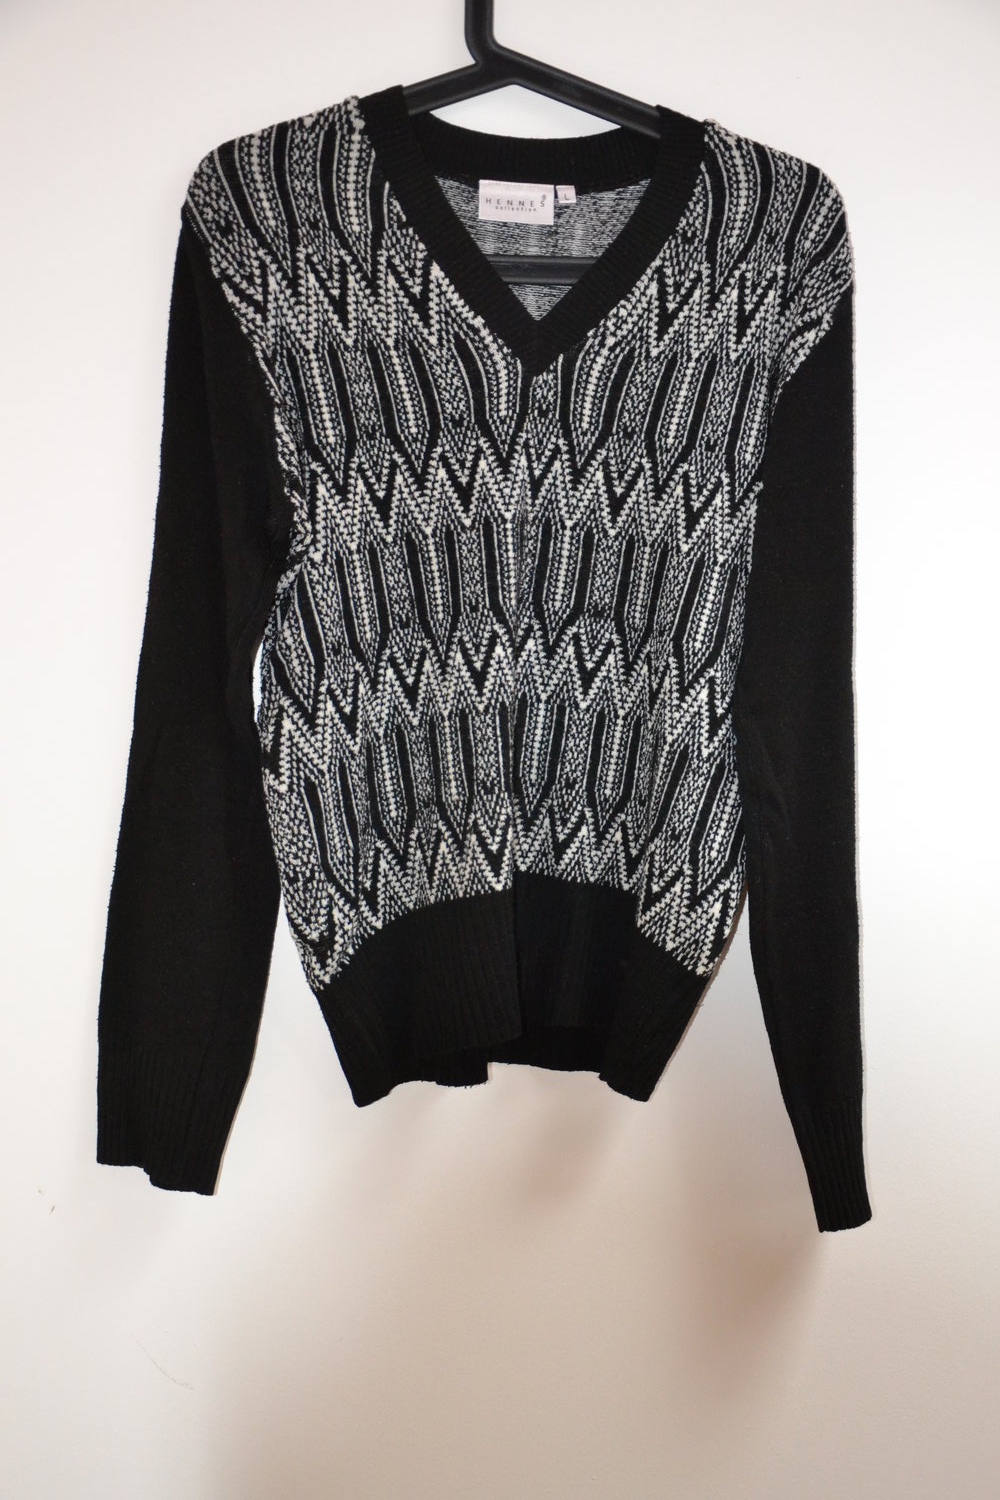 Pullover in schönem schwarz-weiß Muster